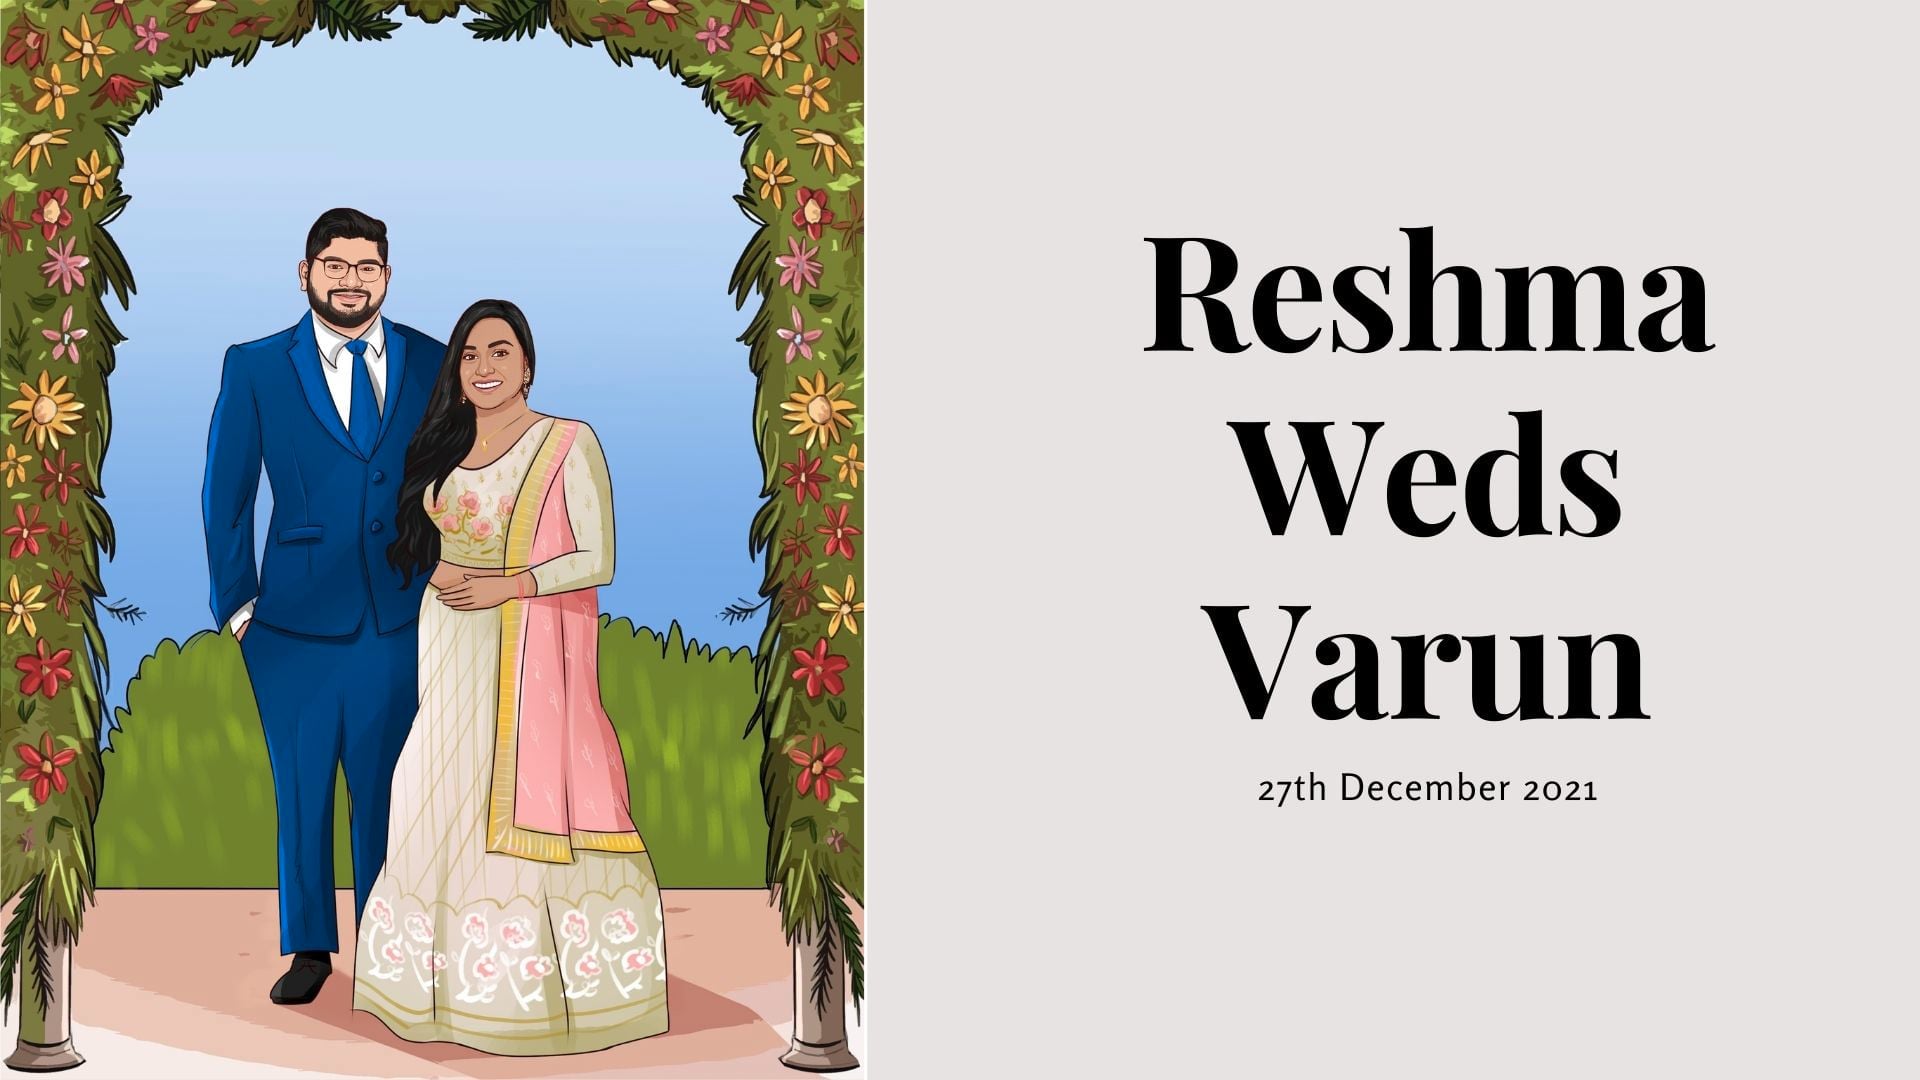 Wedding of Reshma & Varun - Reception